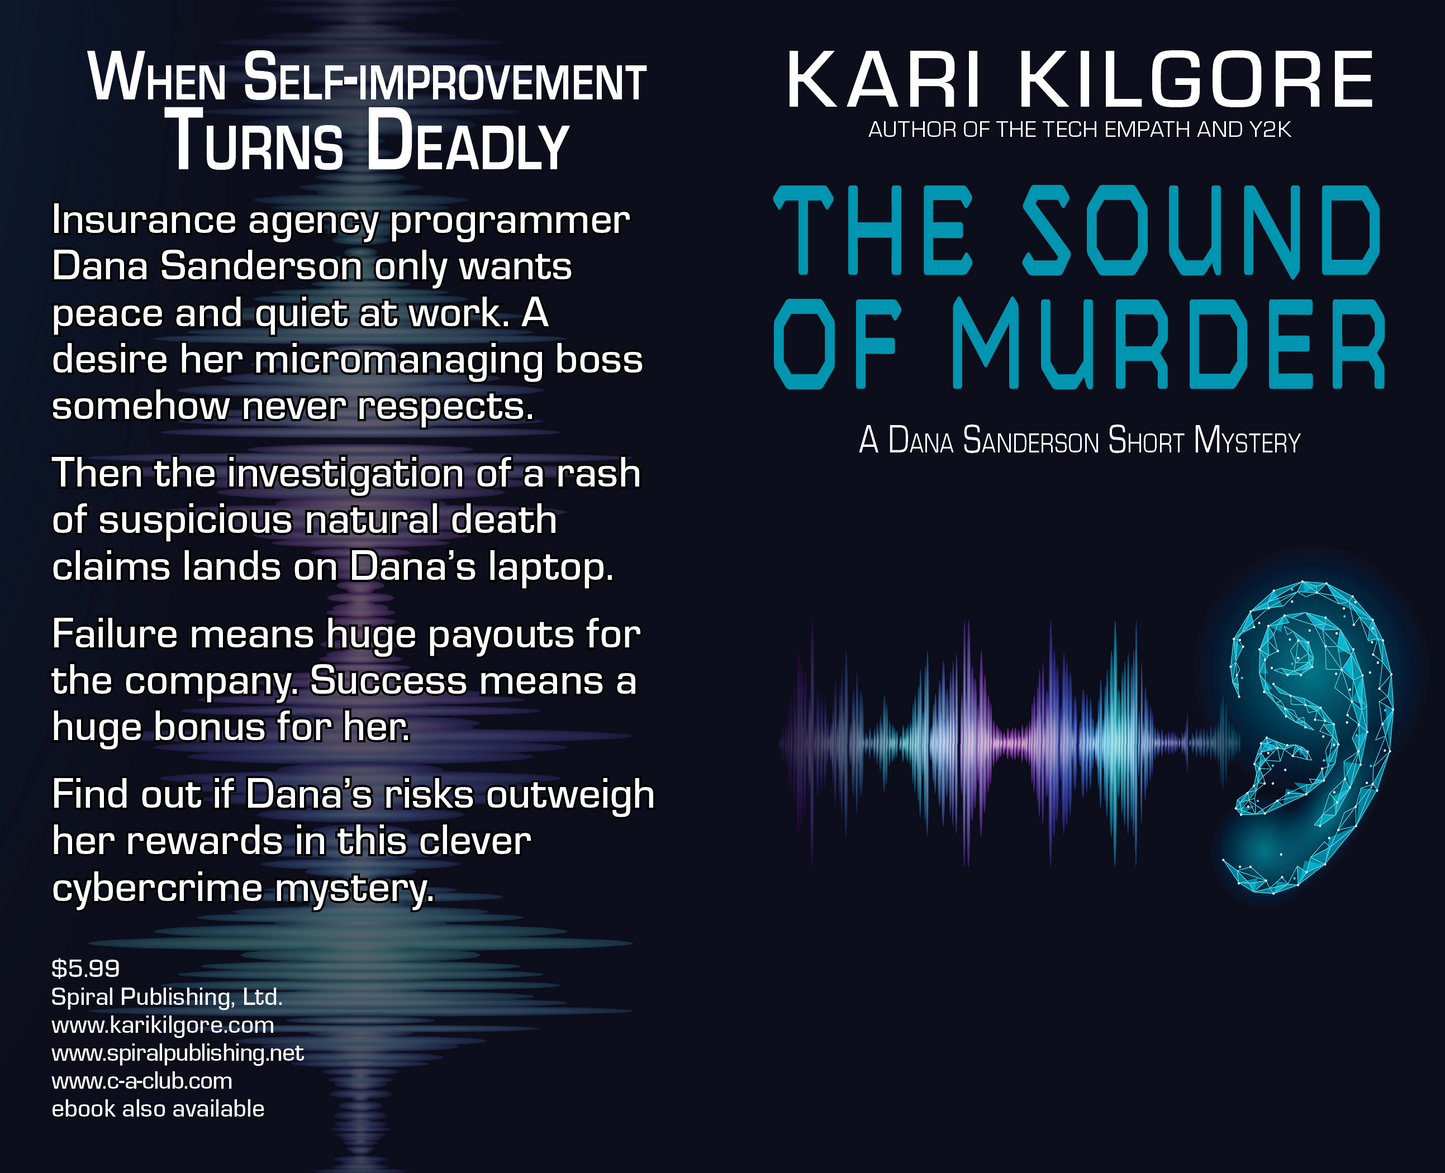 The Sound of Murder